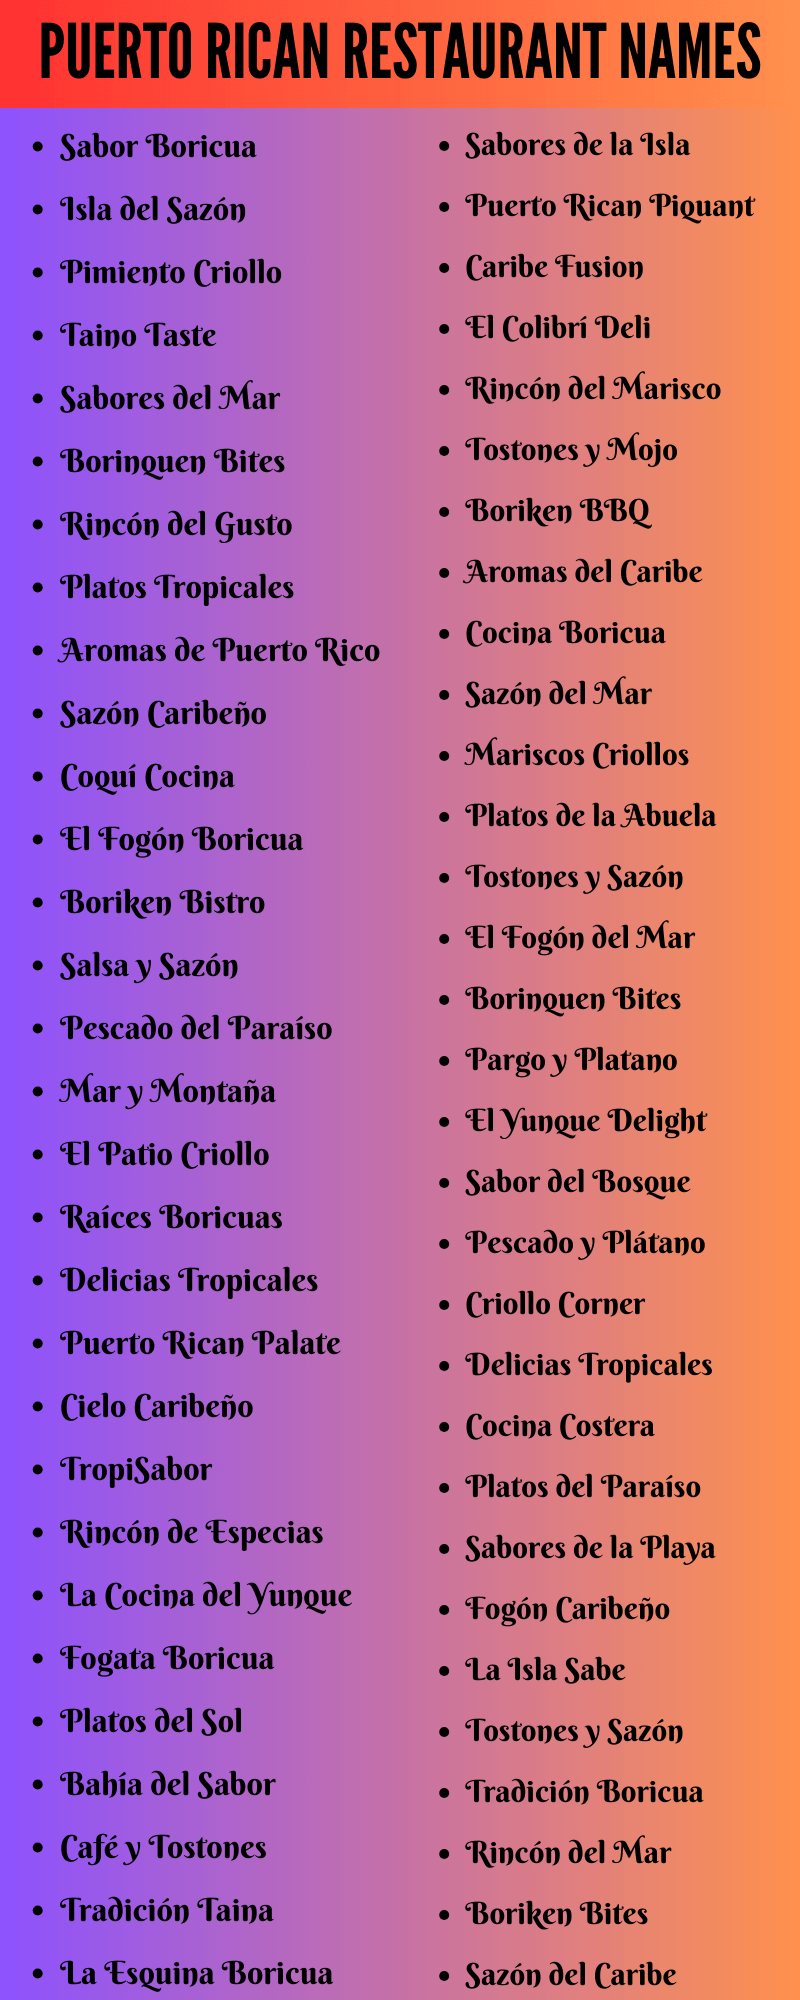 Puerto Rican Restaurant Names